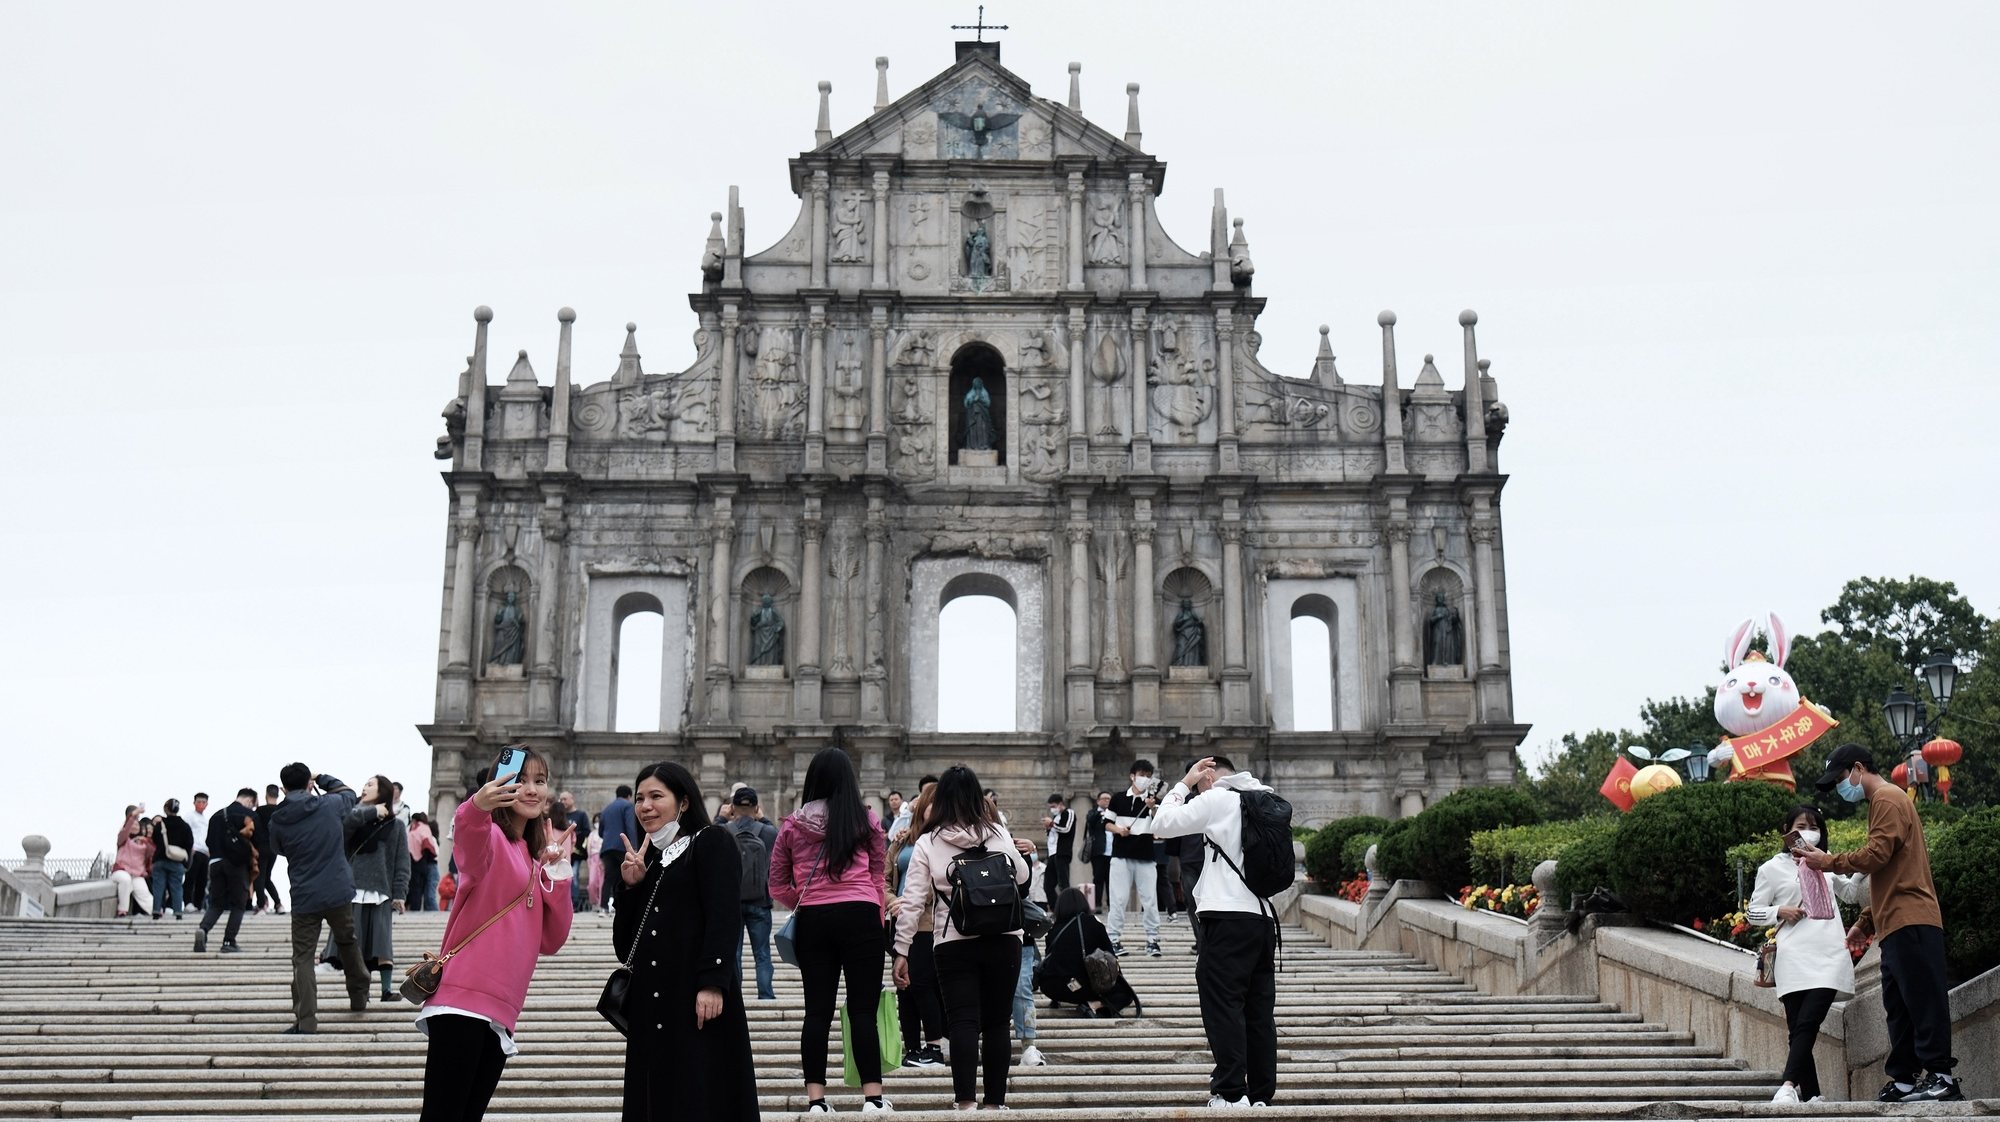 Milhares de turistas voltaram a encher as ruas de Macau e da Taipa depois de levantadas as restrições criadas pela pandemia de covid-19 no passado domingo, dia 8 de janeiro, em Macau, China, 11 de janeiro de 2023. GONÇALO LOBO PINHEIRO/LUSA